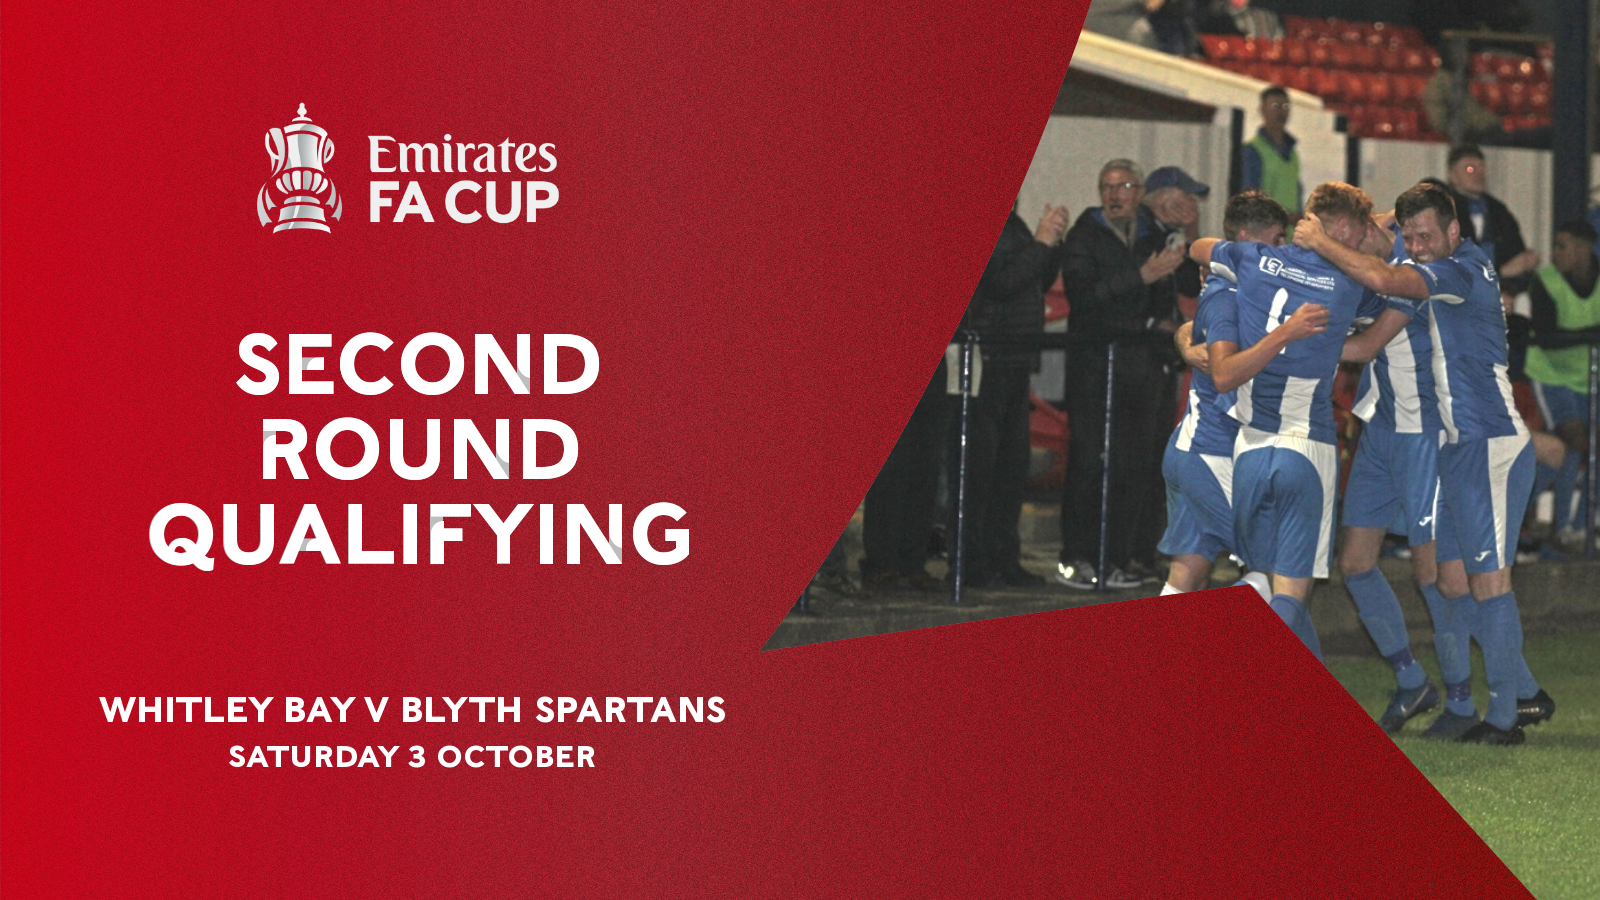 FA Cup tie v Blyth Spartans to be live streamed